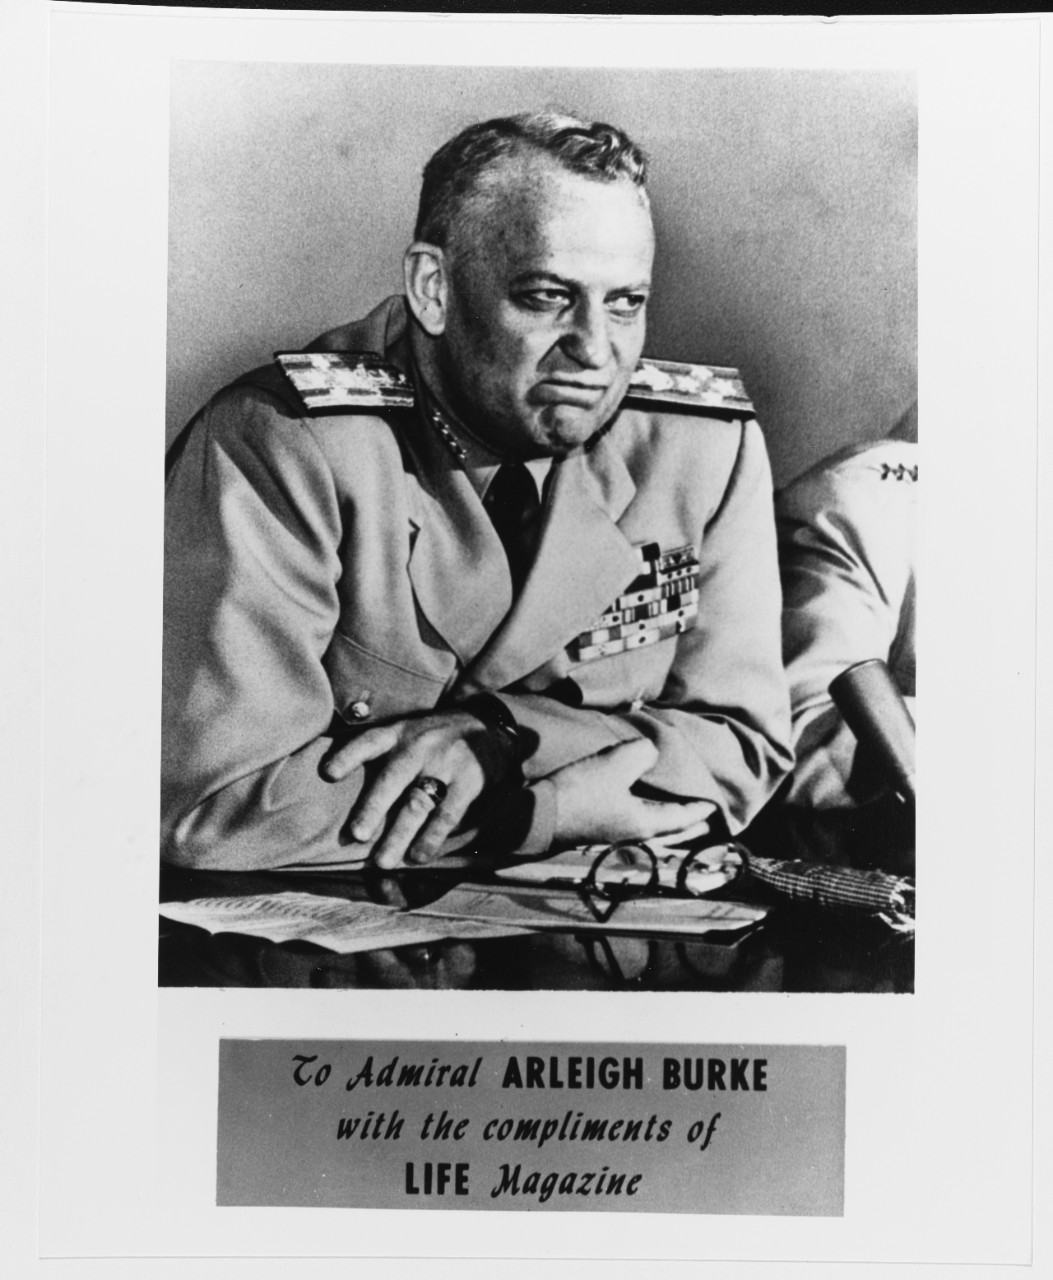 Admiral Arleigh Burke, CNO